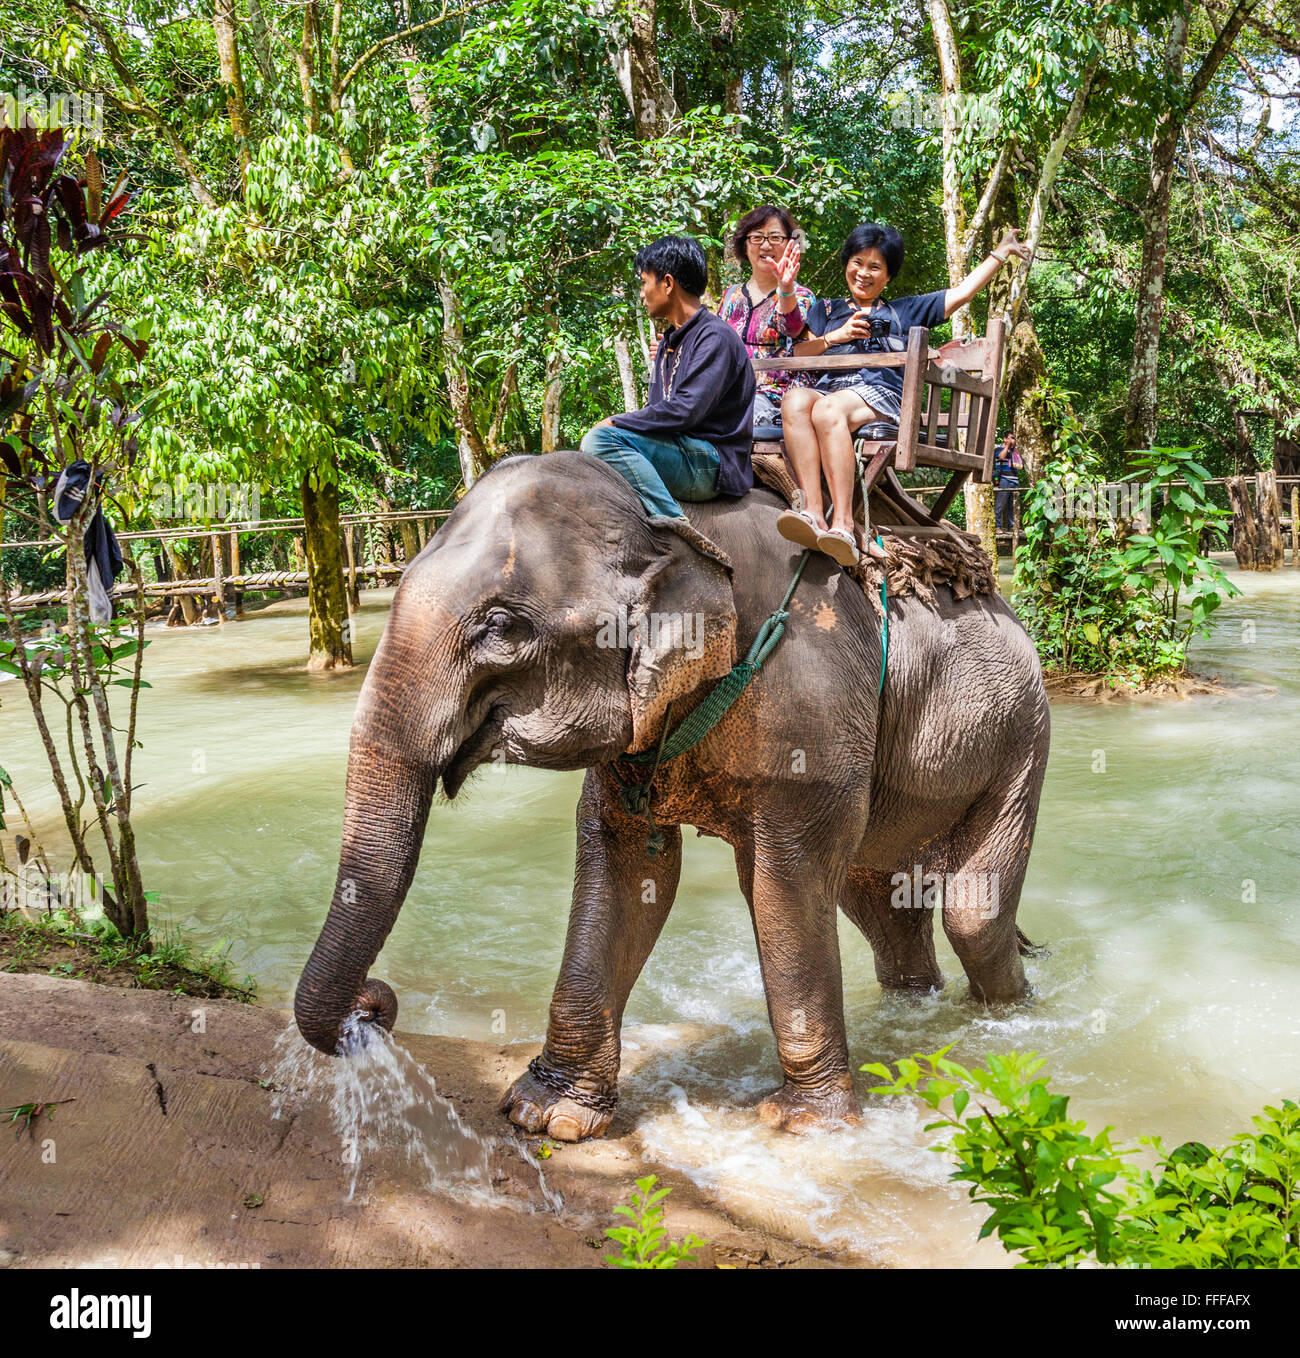 Laos, Luang Prabang Province, touristique repose sur un elepant Lao de l'elephant village sanctuaire à Tat Cascades Sae Banque D'Images